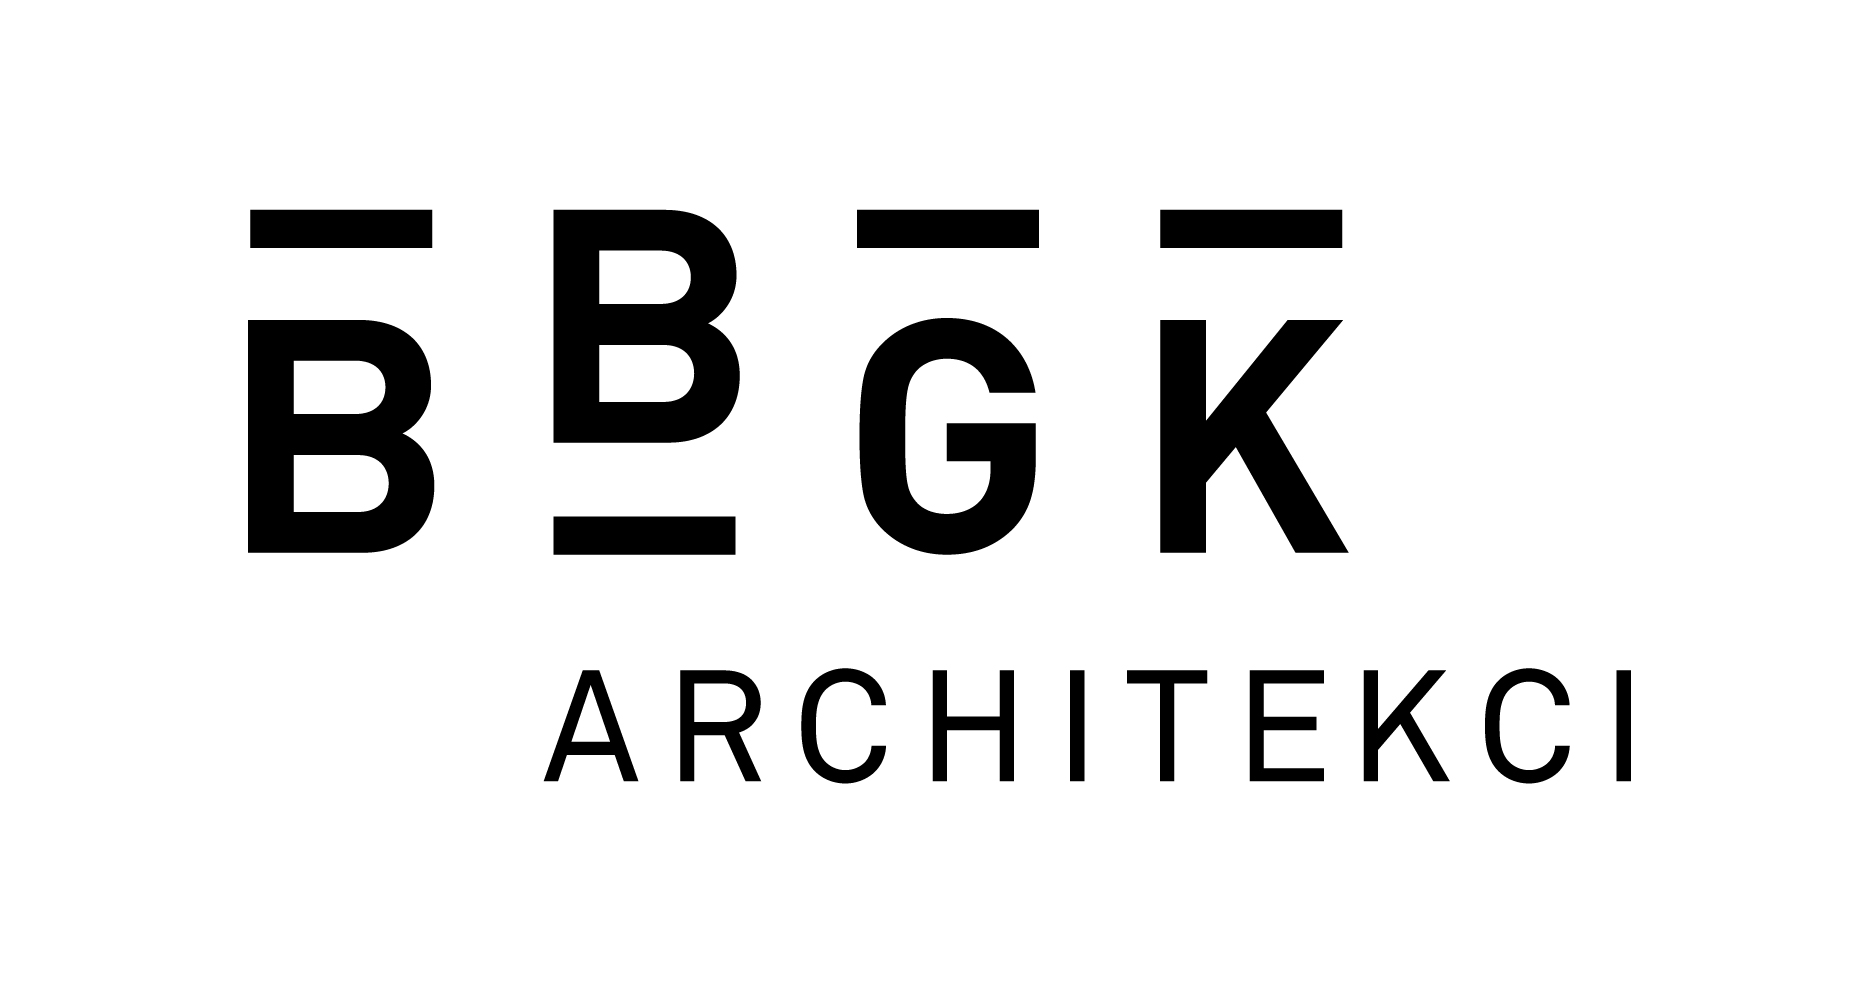 BBGK Architekci